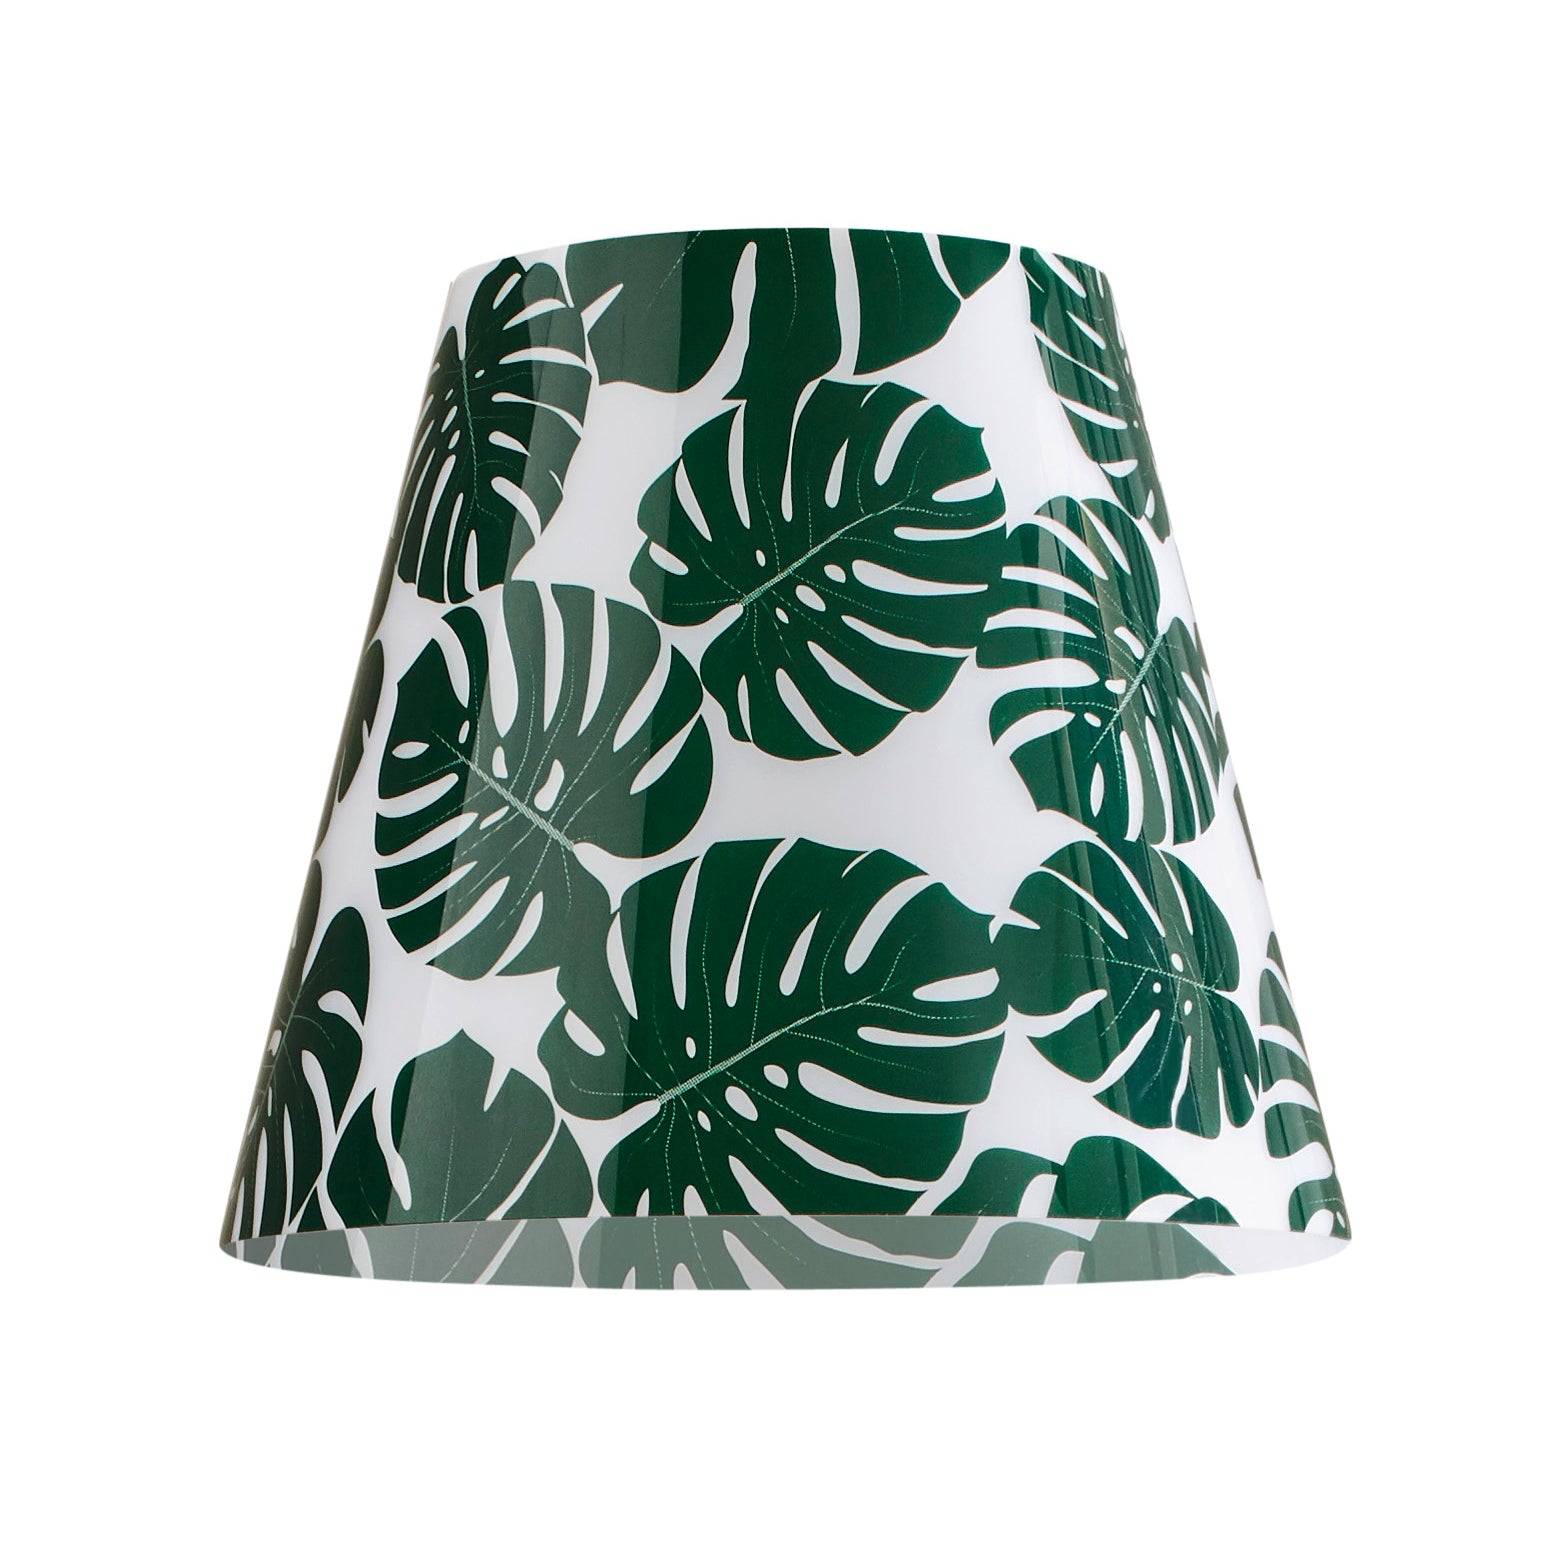 Wechselbares Design Cover für den Swap Lampenschirm von Moree; rund, nach unten leicht ausgestellt, weiß mit grünen Blättern im Design eines Gummibaums bedruckt.